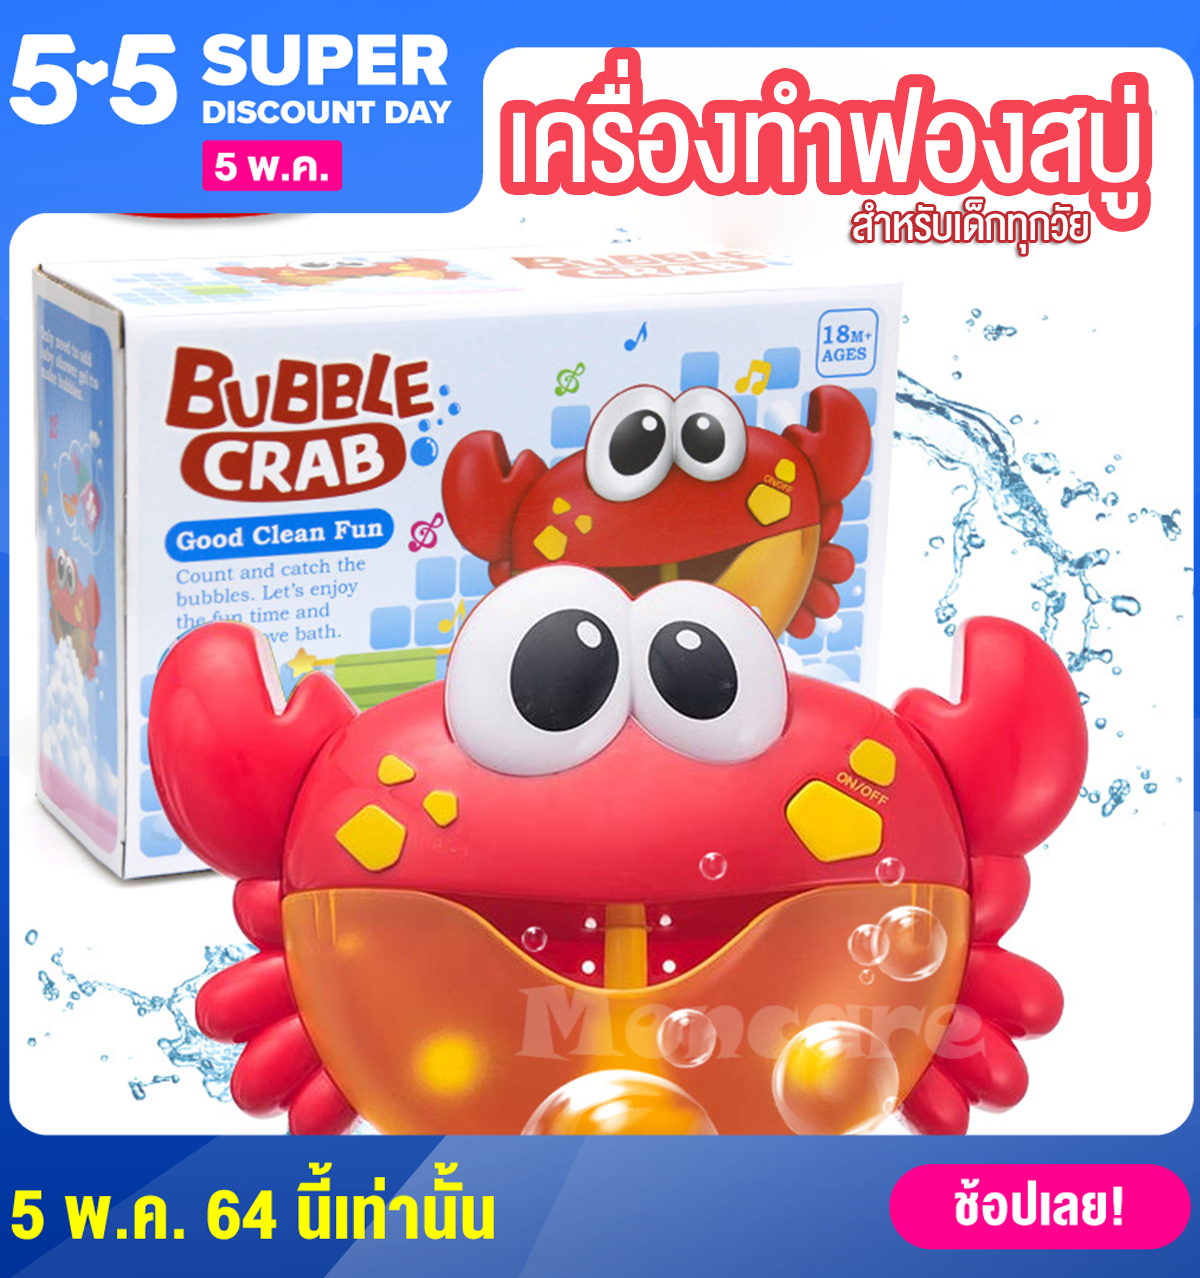 MONCARE ปูเป่าฟอง เครื่องสร้างฟองสบู่ Crab Bubble ปูพ่นฟอง ของเล่นอาบน้ำ เครื่องเป่าฟองรูปปู